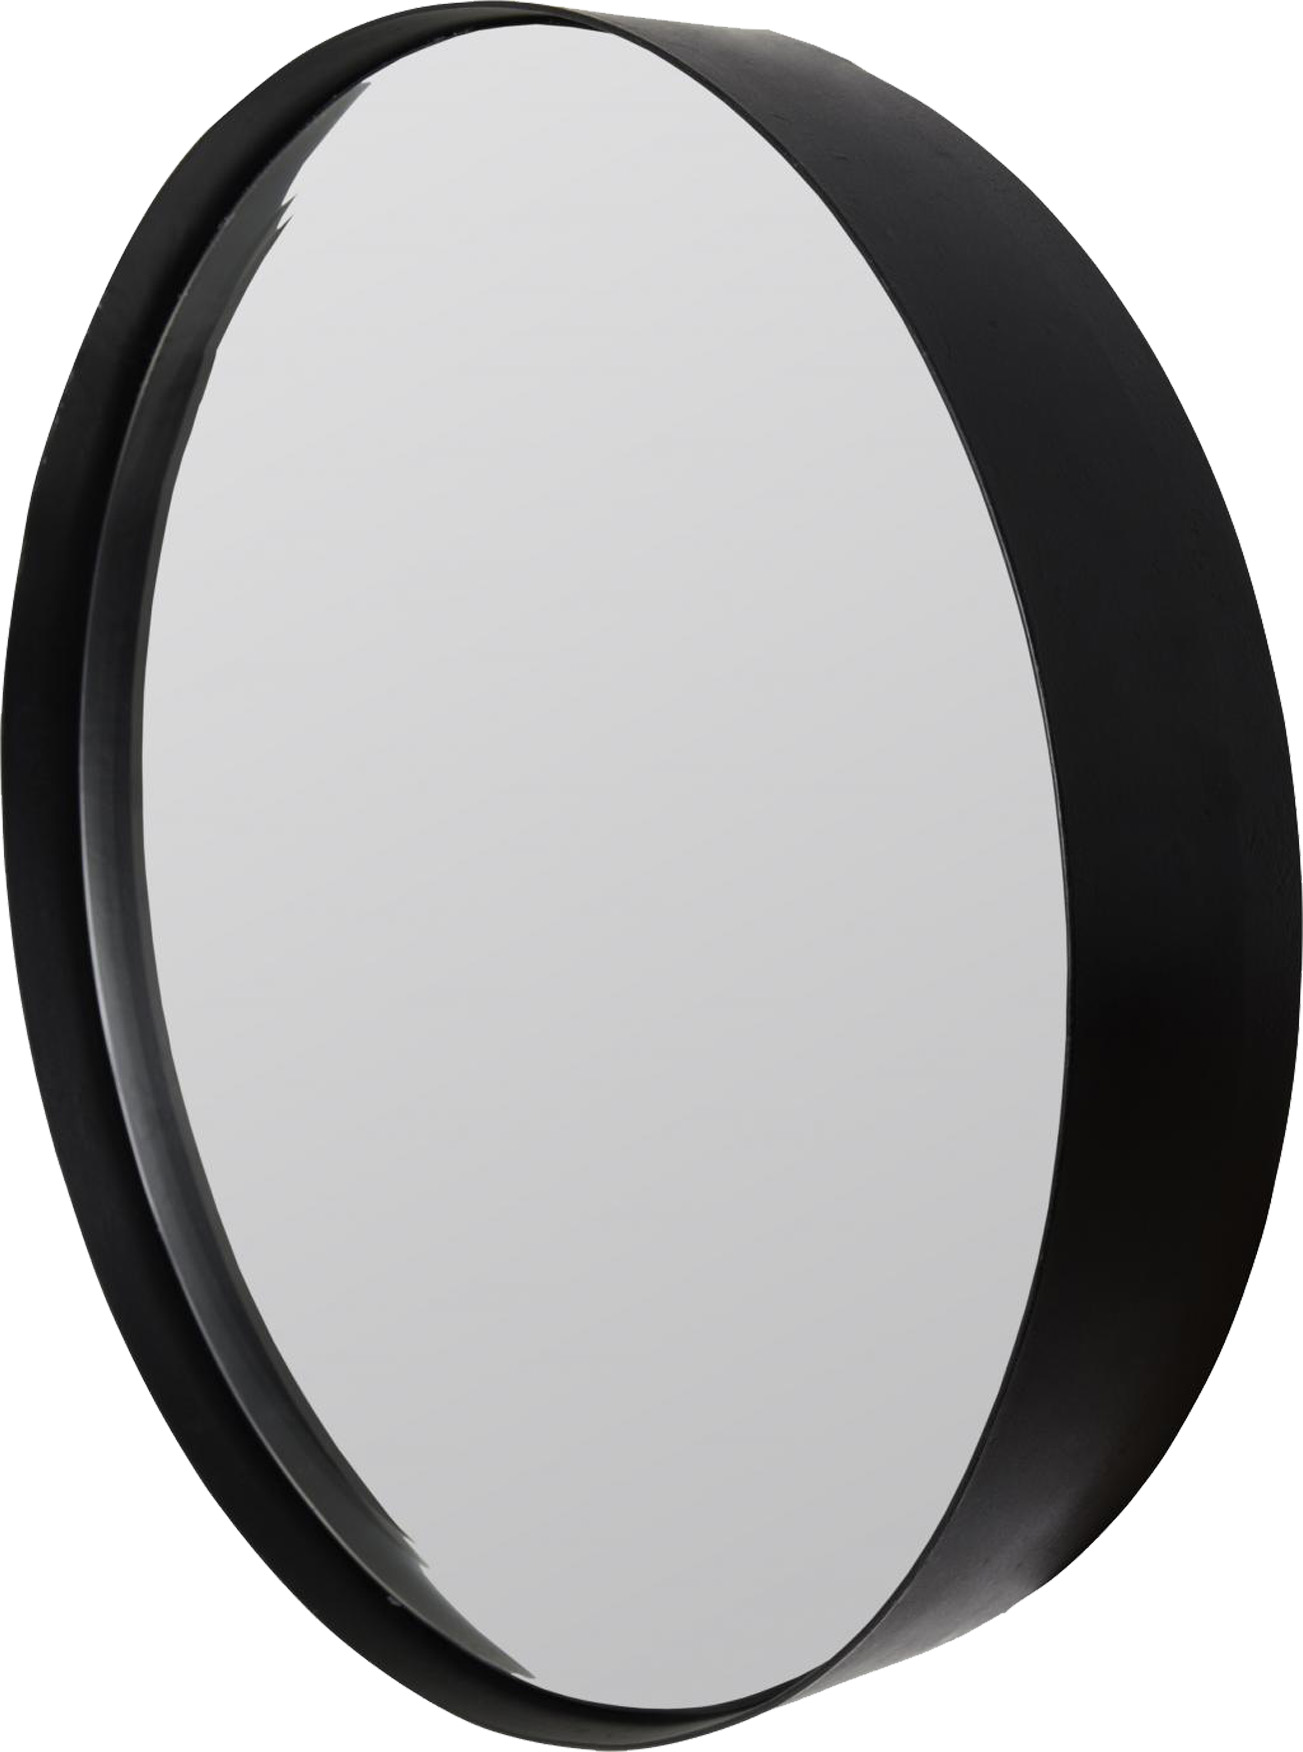 Spiegel ROUND L | Stahl matt schwarz 3 mm | rund ca. 75 cm